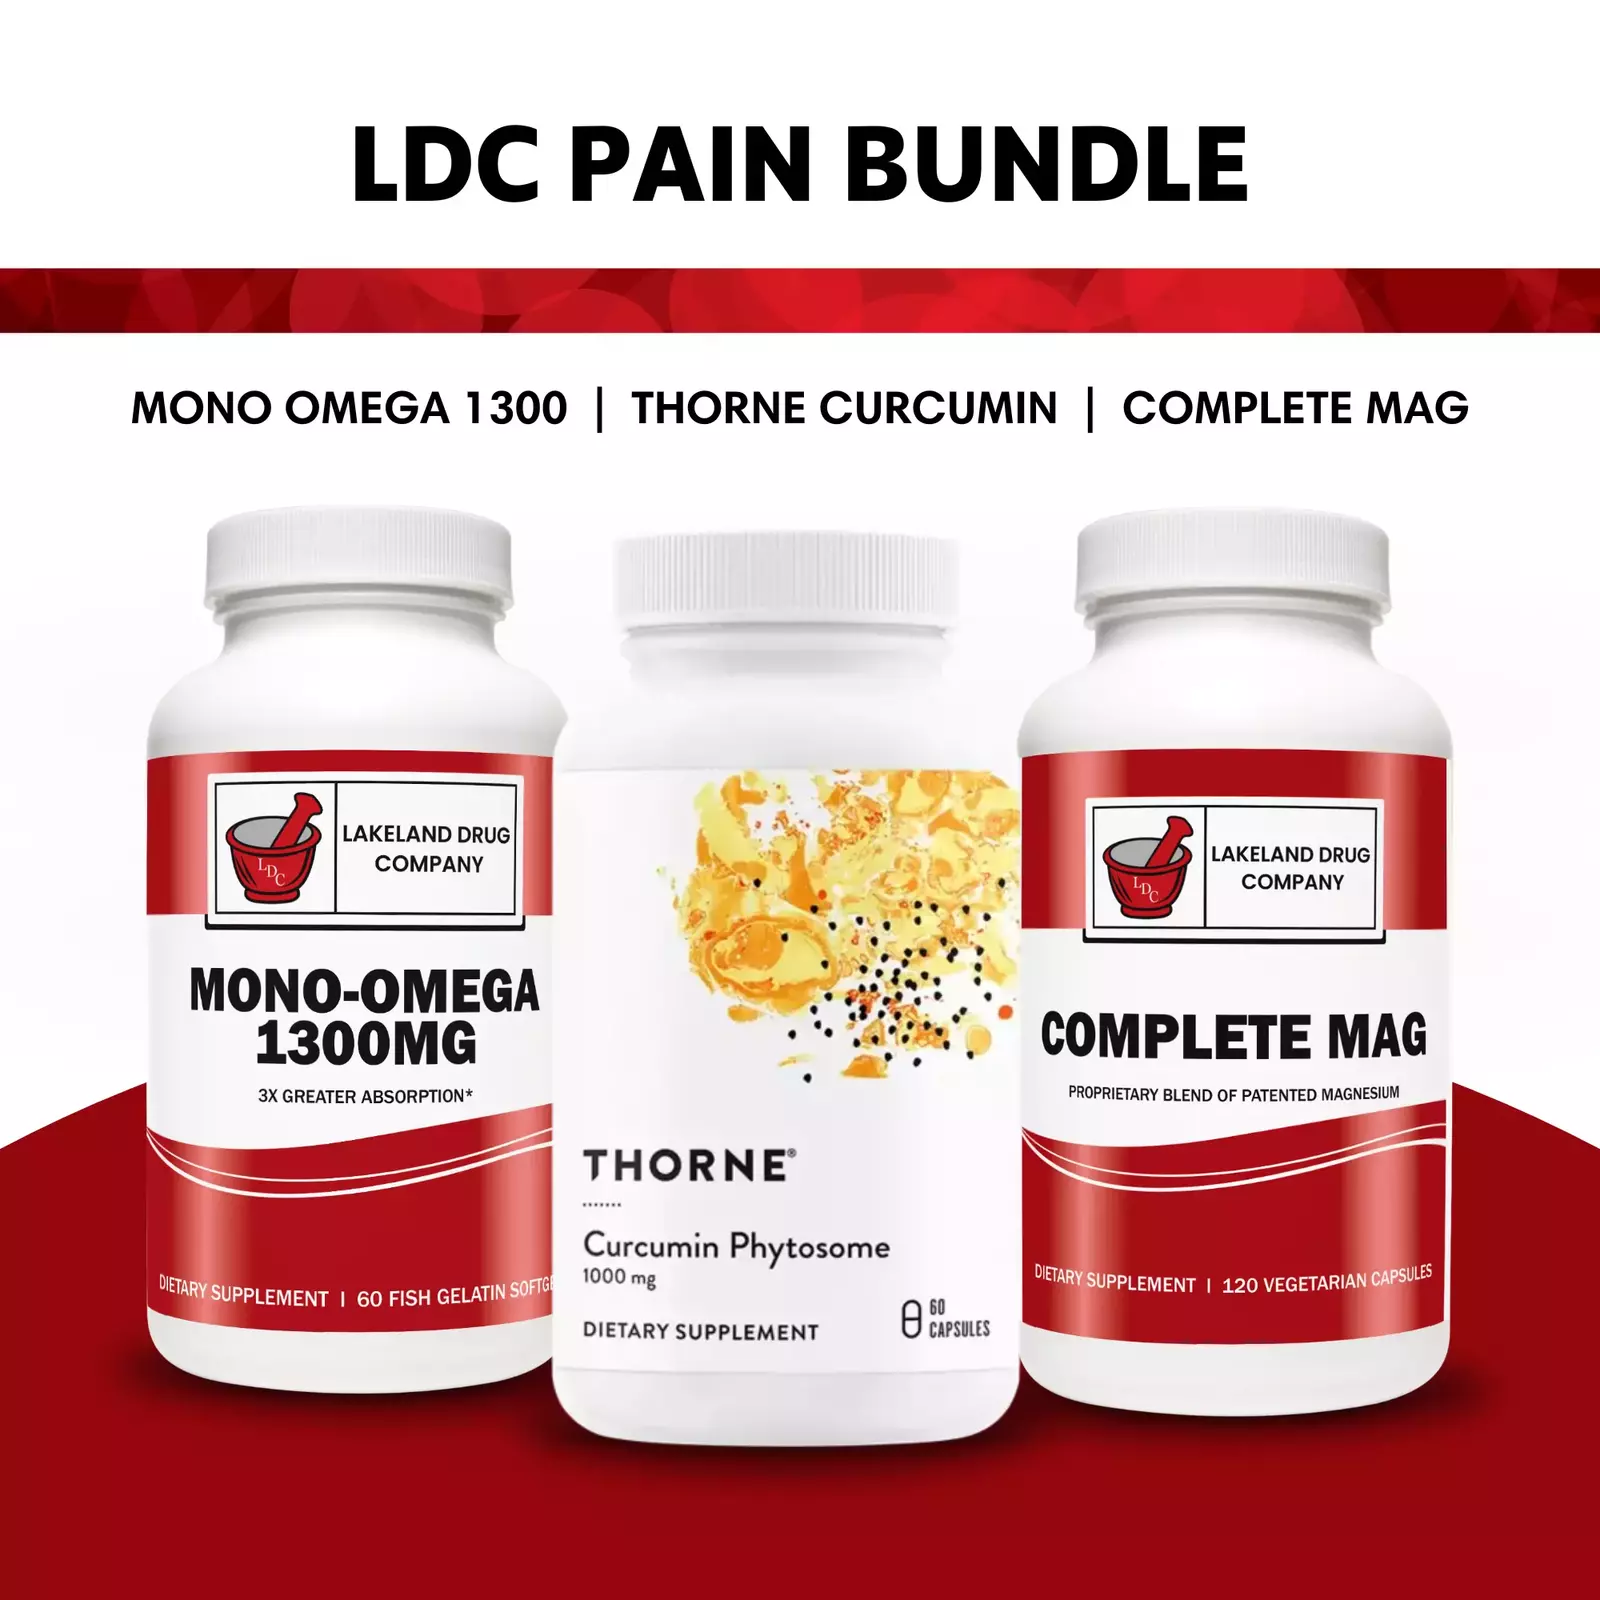 LDC Pain Bundle